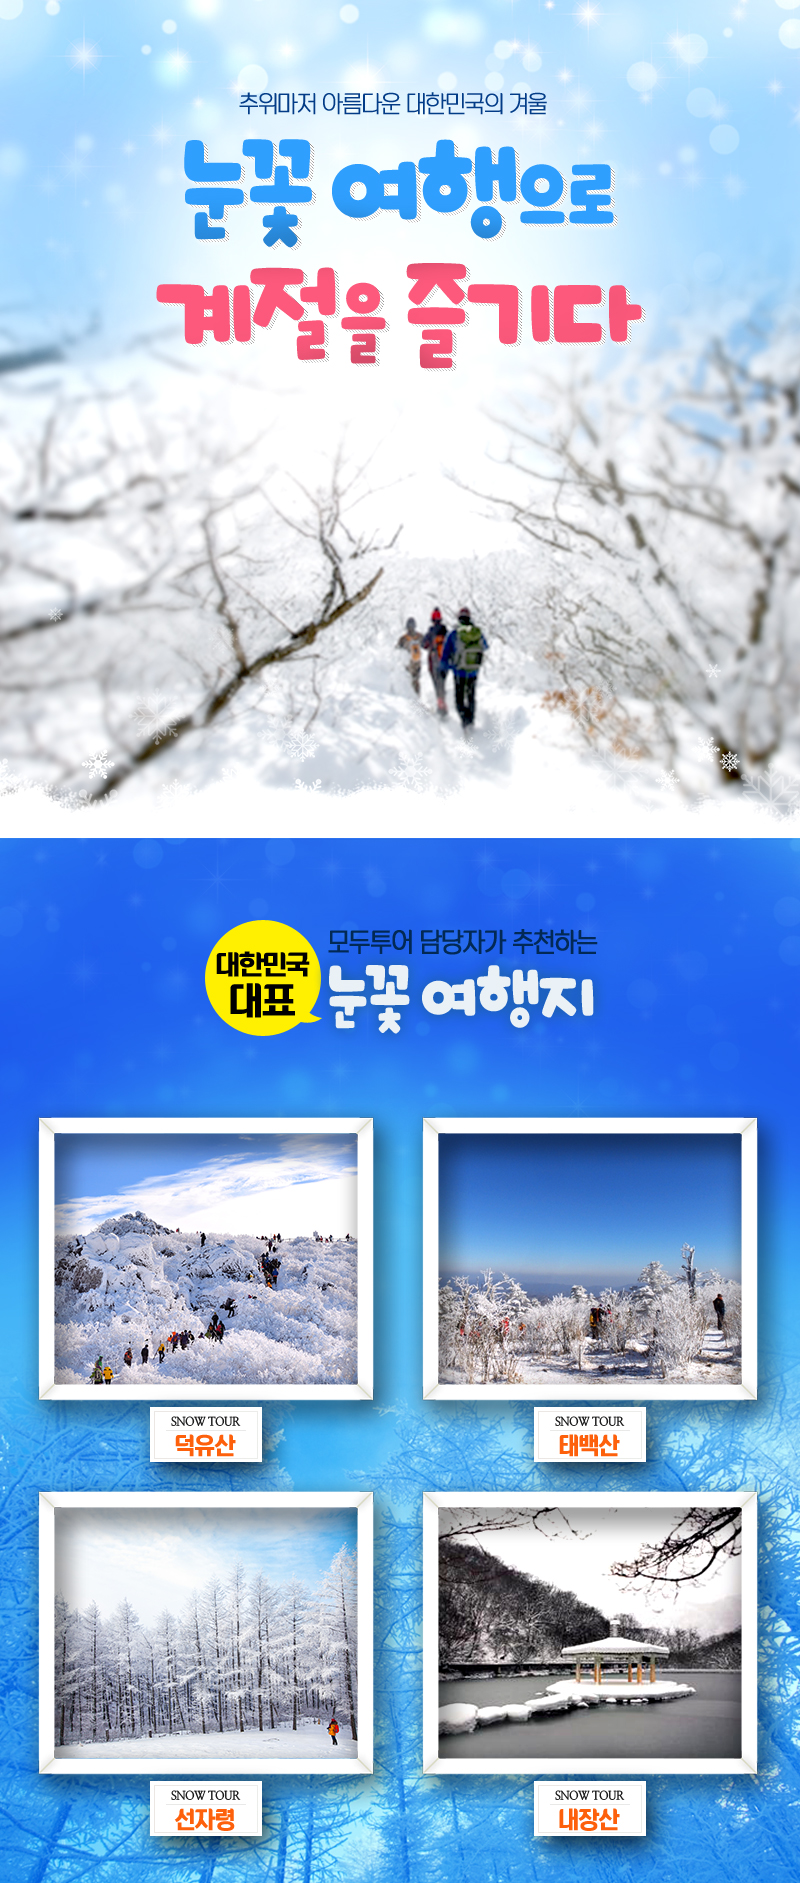 추의마저 아름다운 대한민국의 겨울 눈꽃여행으로 계절을 즐기다!